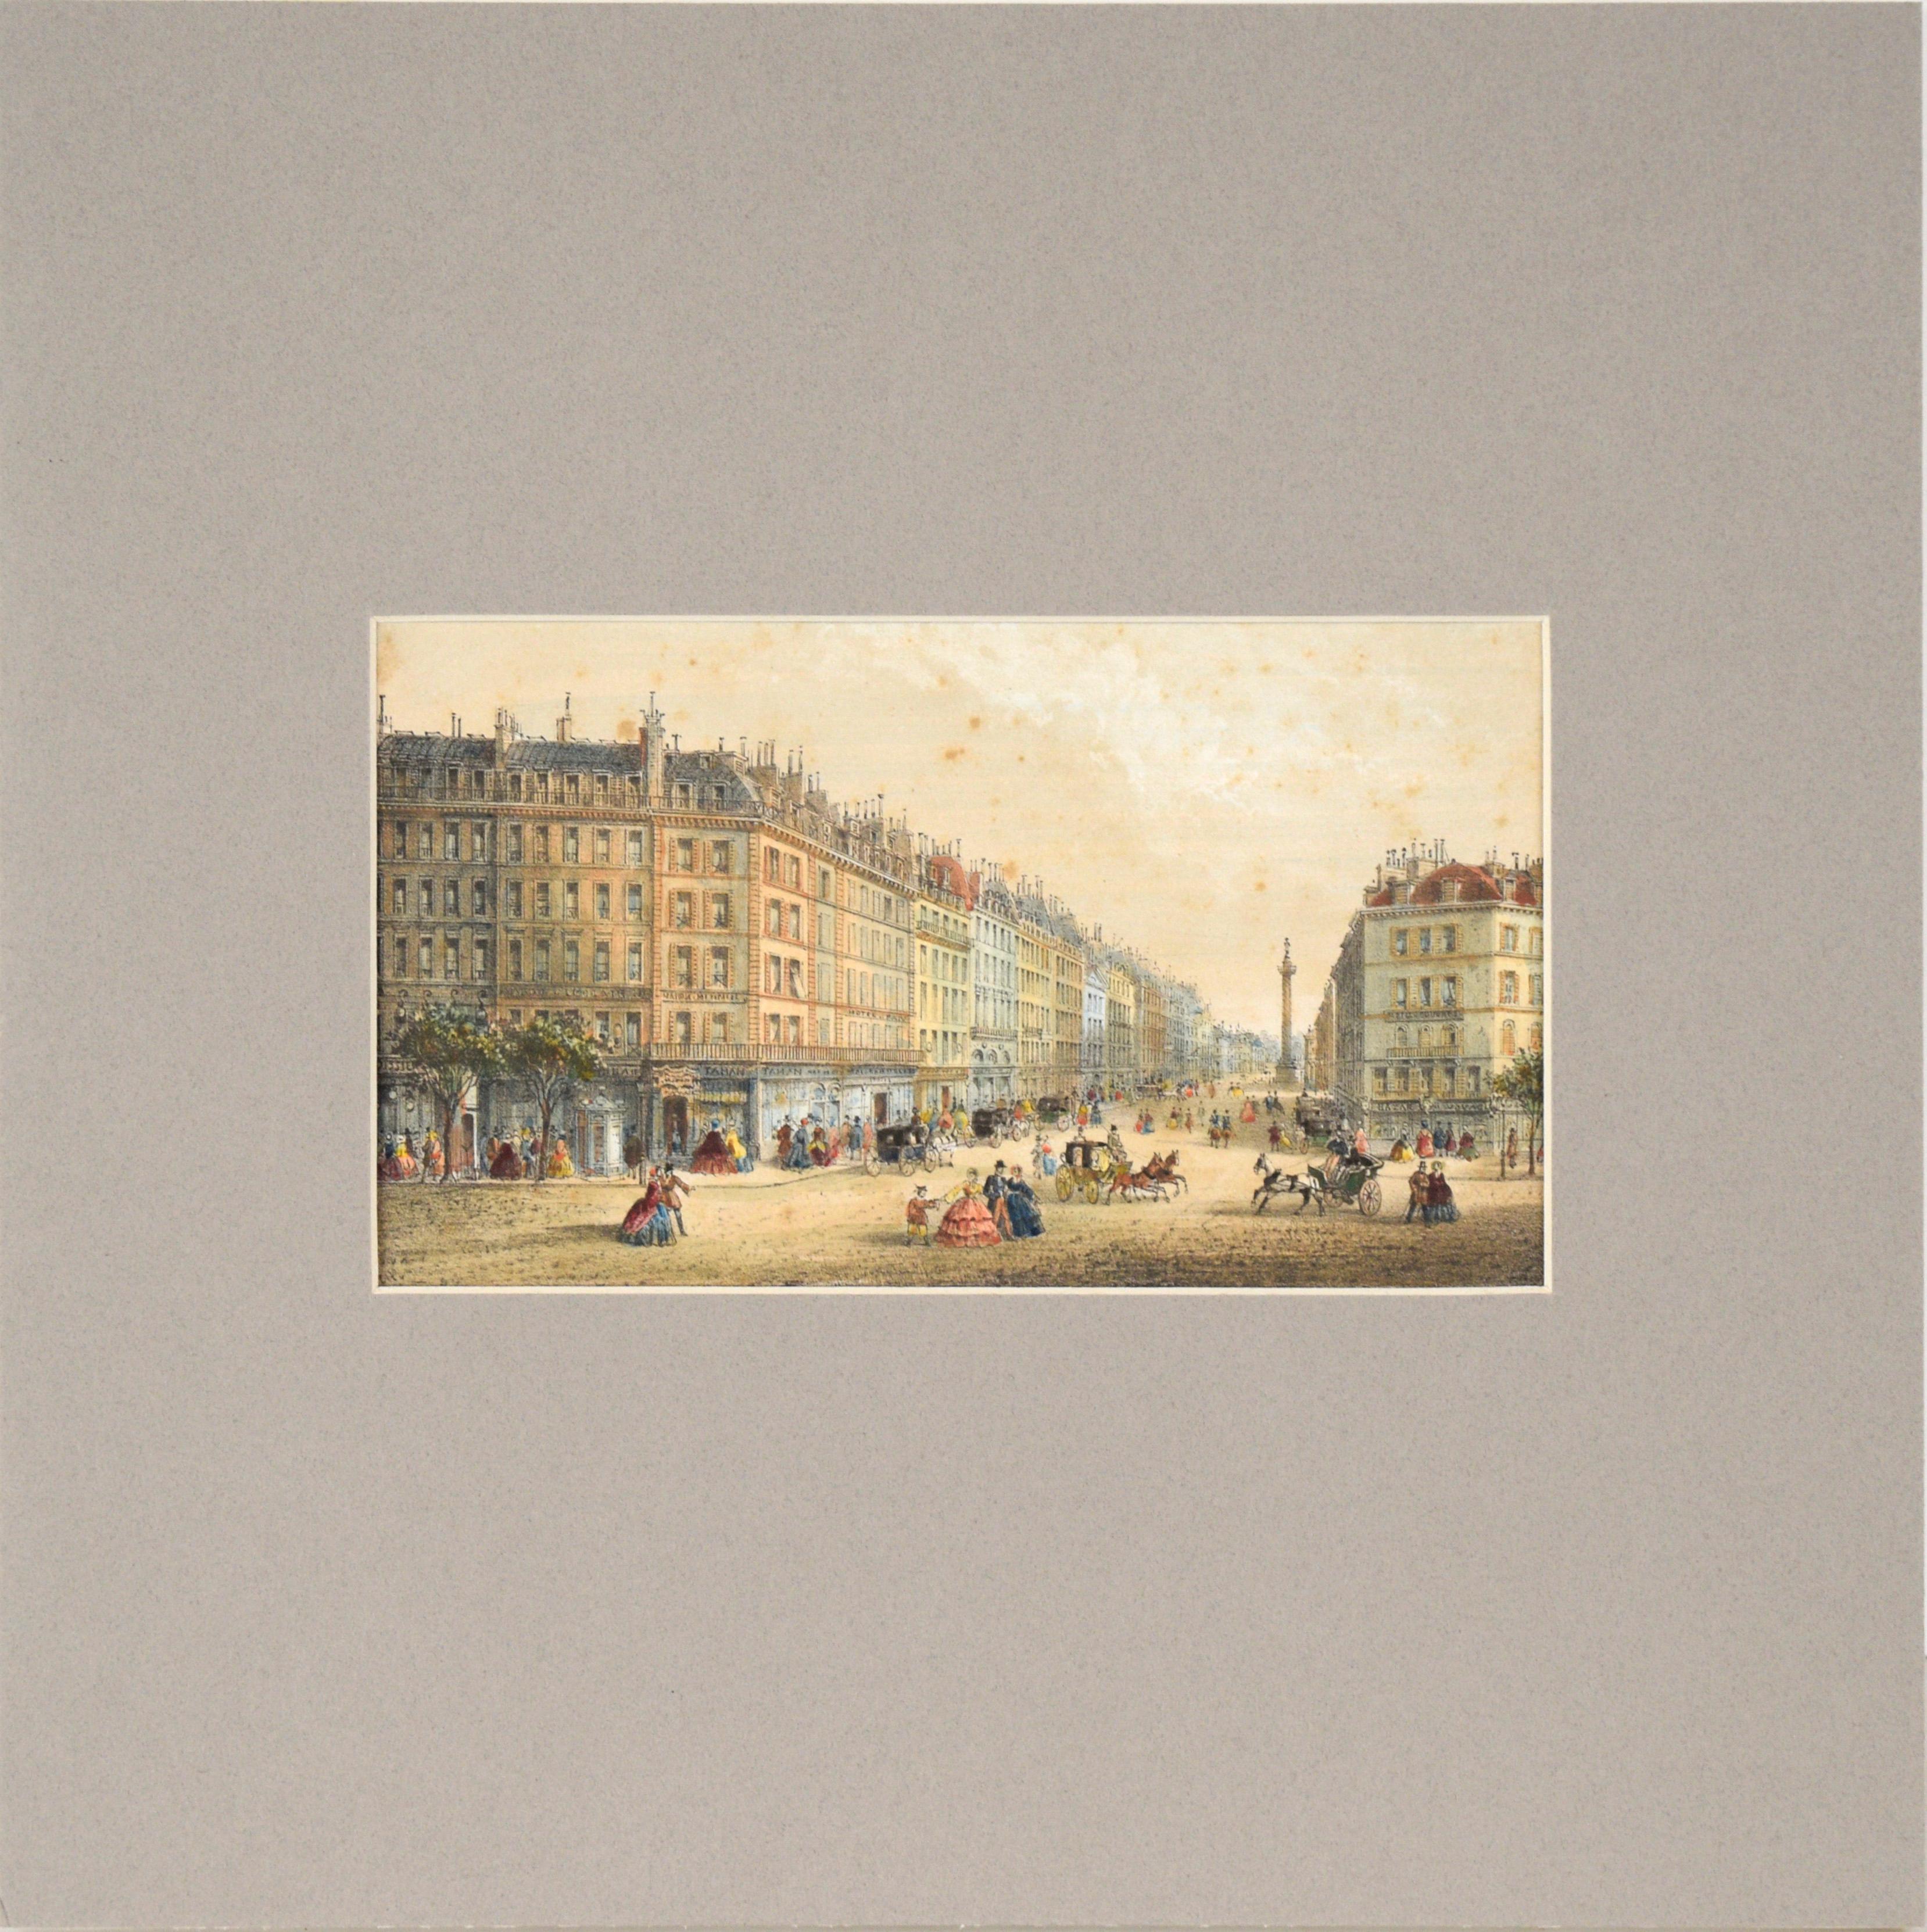 Rose-Joseph Lemercier  Figurative Print - Rue de la Paix, Paris - Hand Colored Lithograph 1845-1860